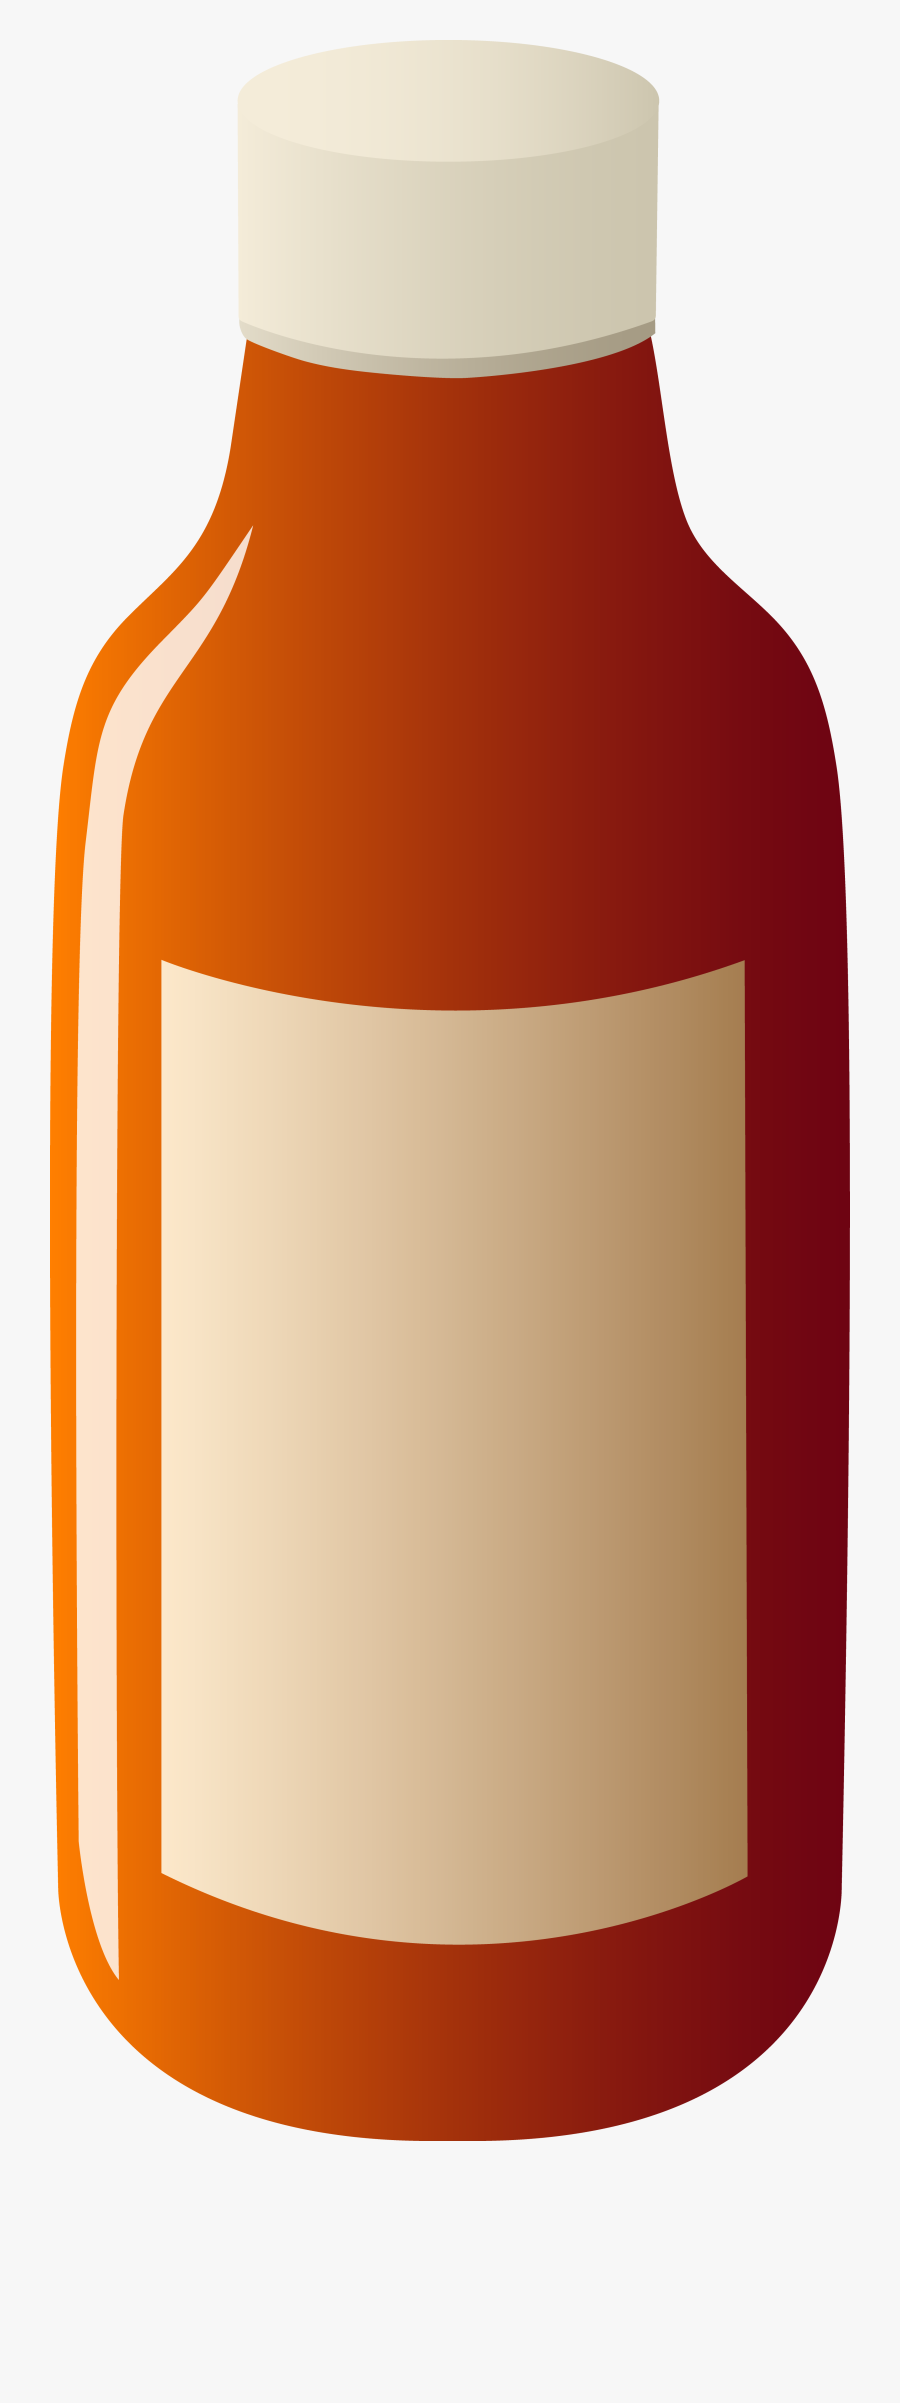 Science Clipart Bottle, Transparent Clipart